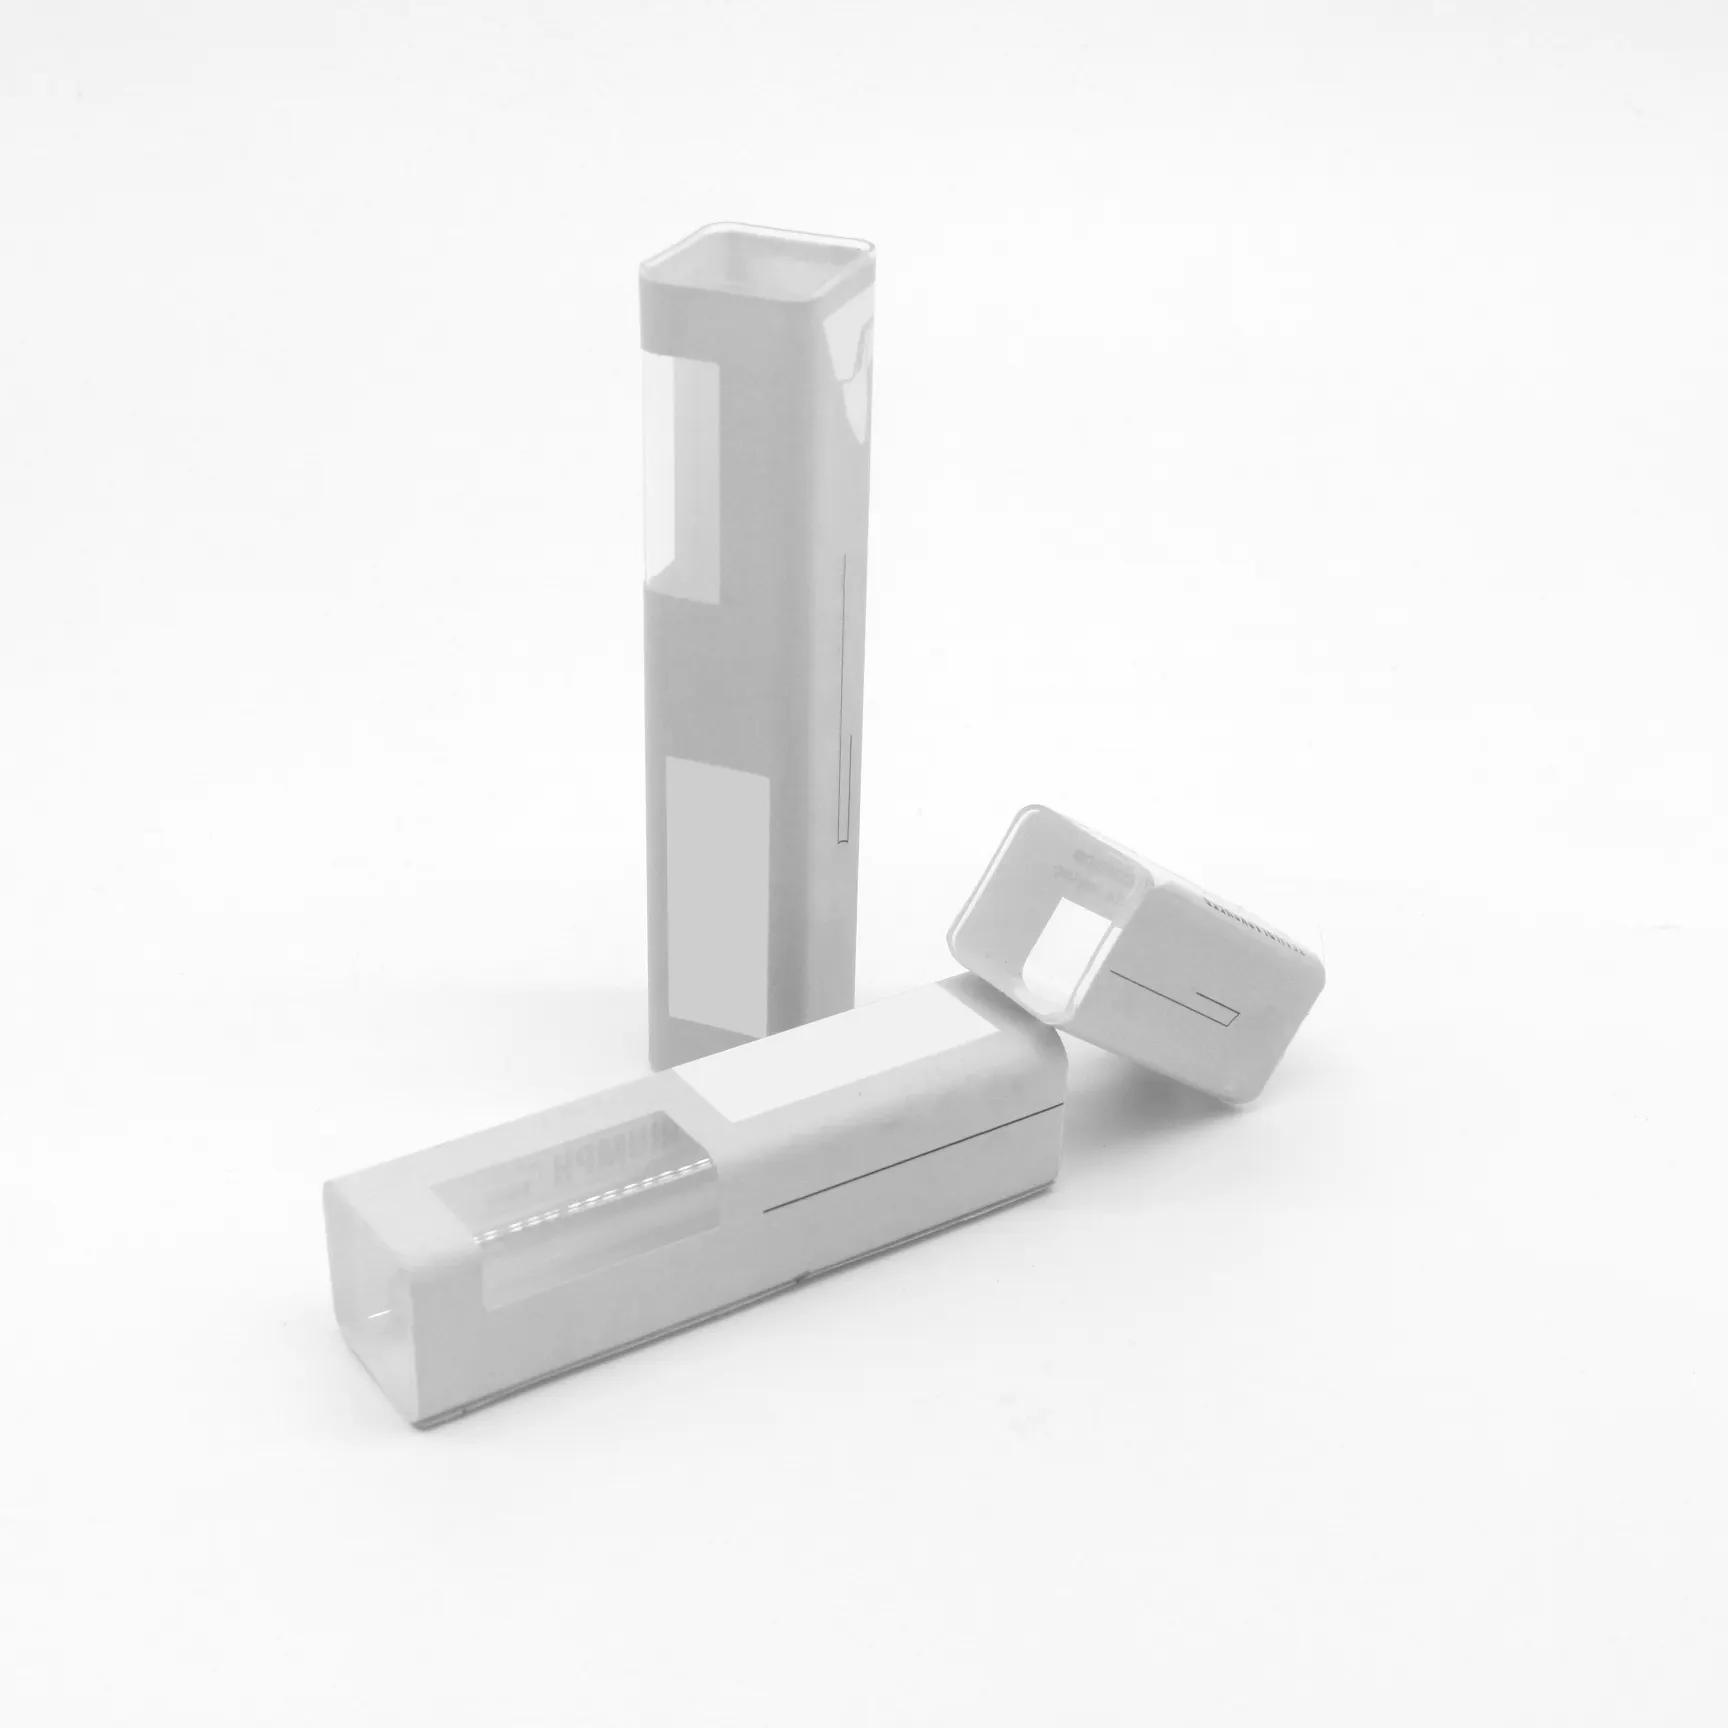 Le tube transparent d'emballage en plastique carré avec une longueur de côté de 20.5mm peut traiter l'impression et les autocollants